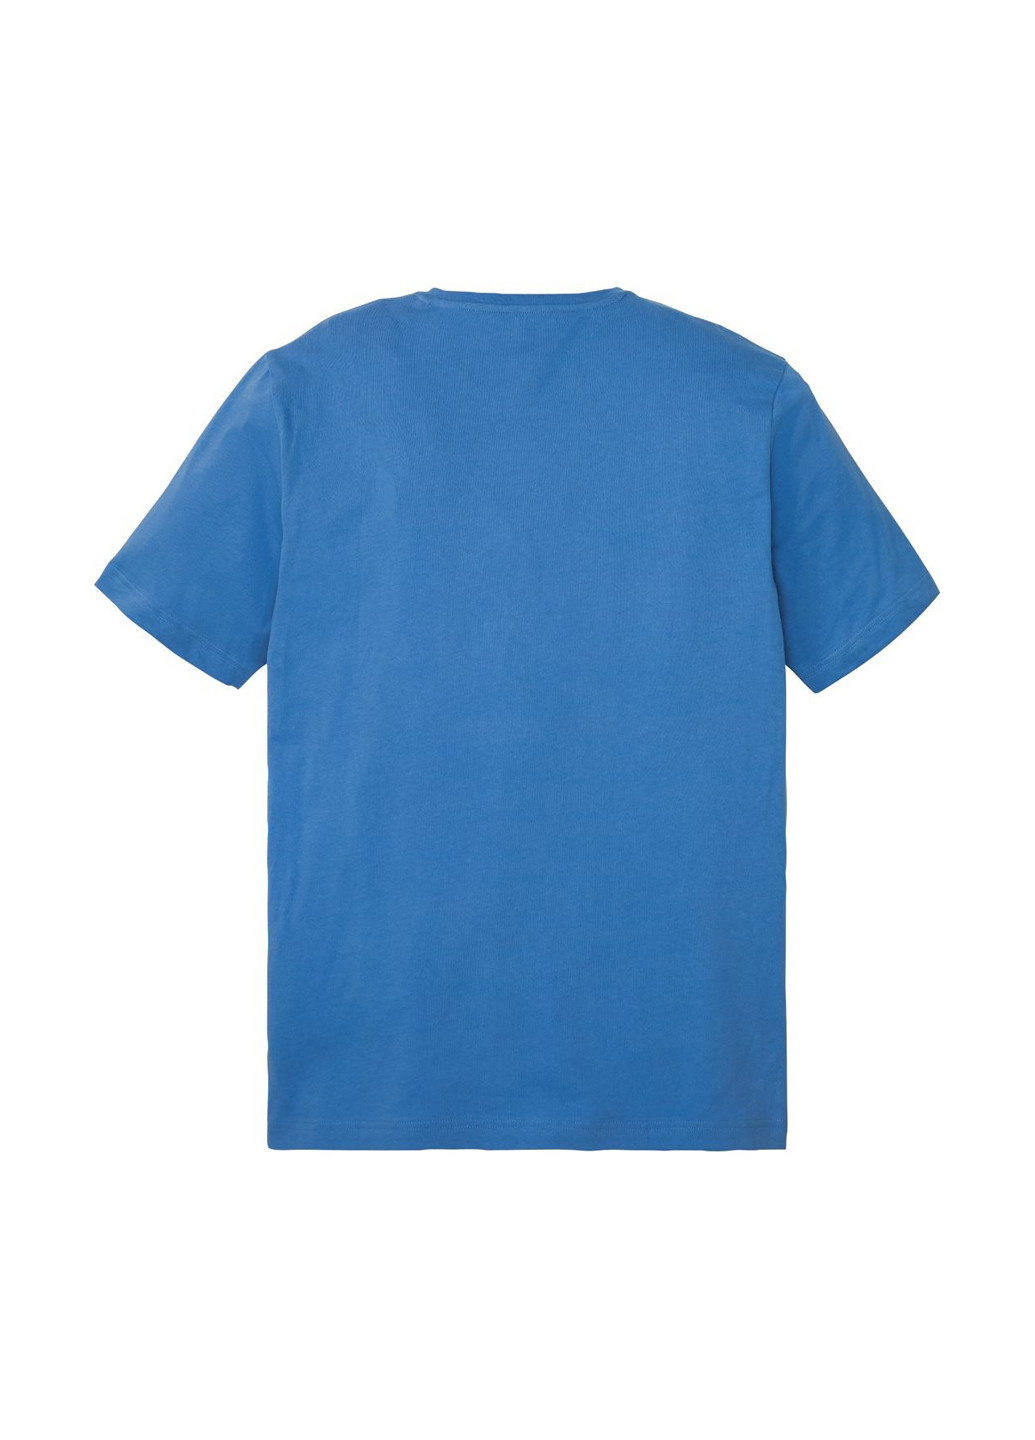 Піжама (футболка, шорти) Livergy футболка + шорти напис синя домашня бавовна, трикотаж